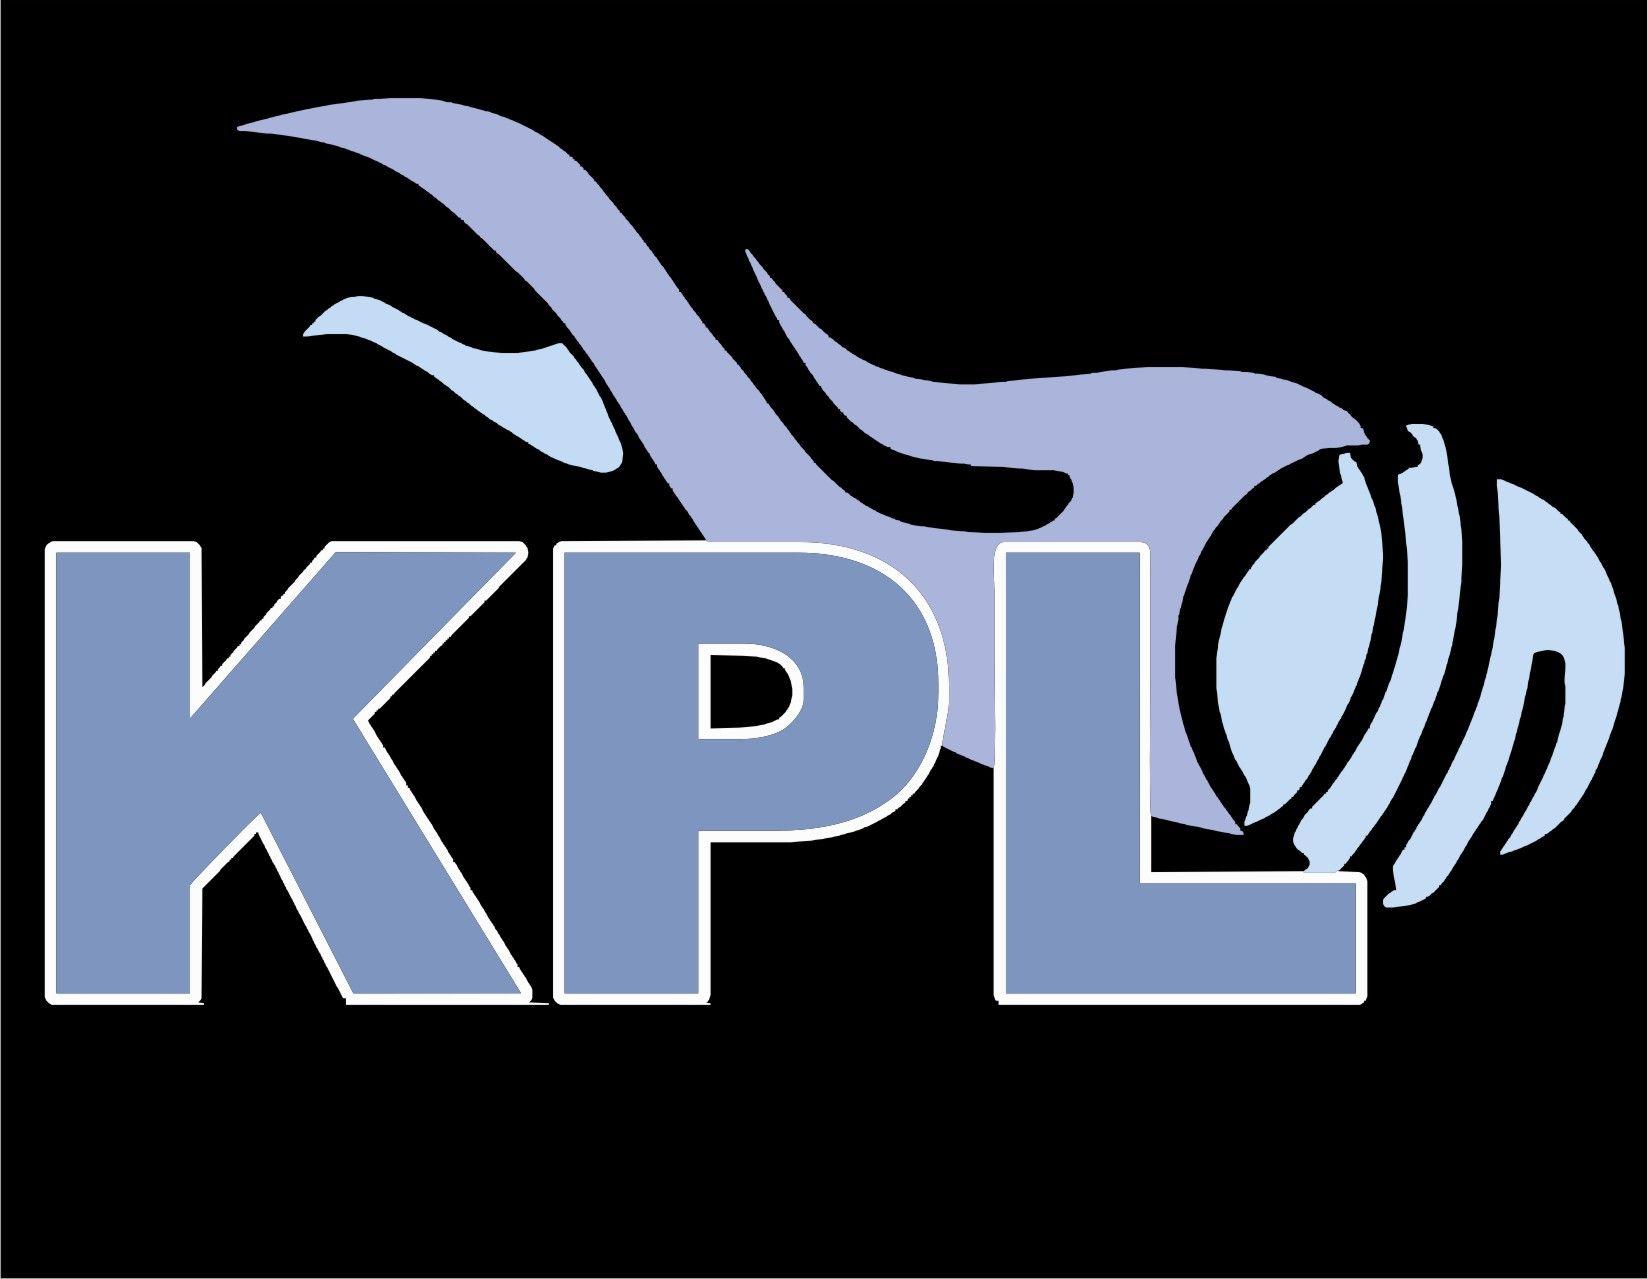 ಕೆಪಿಎಲ್ ಕ್ರಿಕೆಟ್ ಟೂರ್ನಿ ಮಾರ್ಚ್ 7ರಿಂದ ಹುಬ್ಬಳ್ಳಿಯಲ್ಲಿ | KPL Cricket  Tournament from March 7 in Hubli News in Kannada